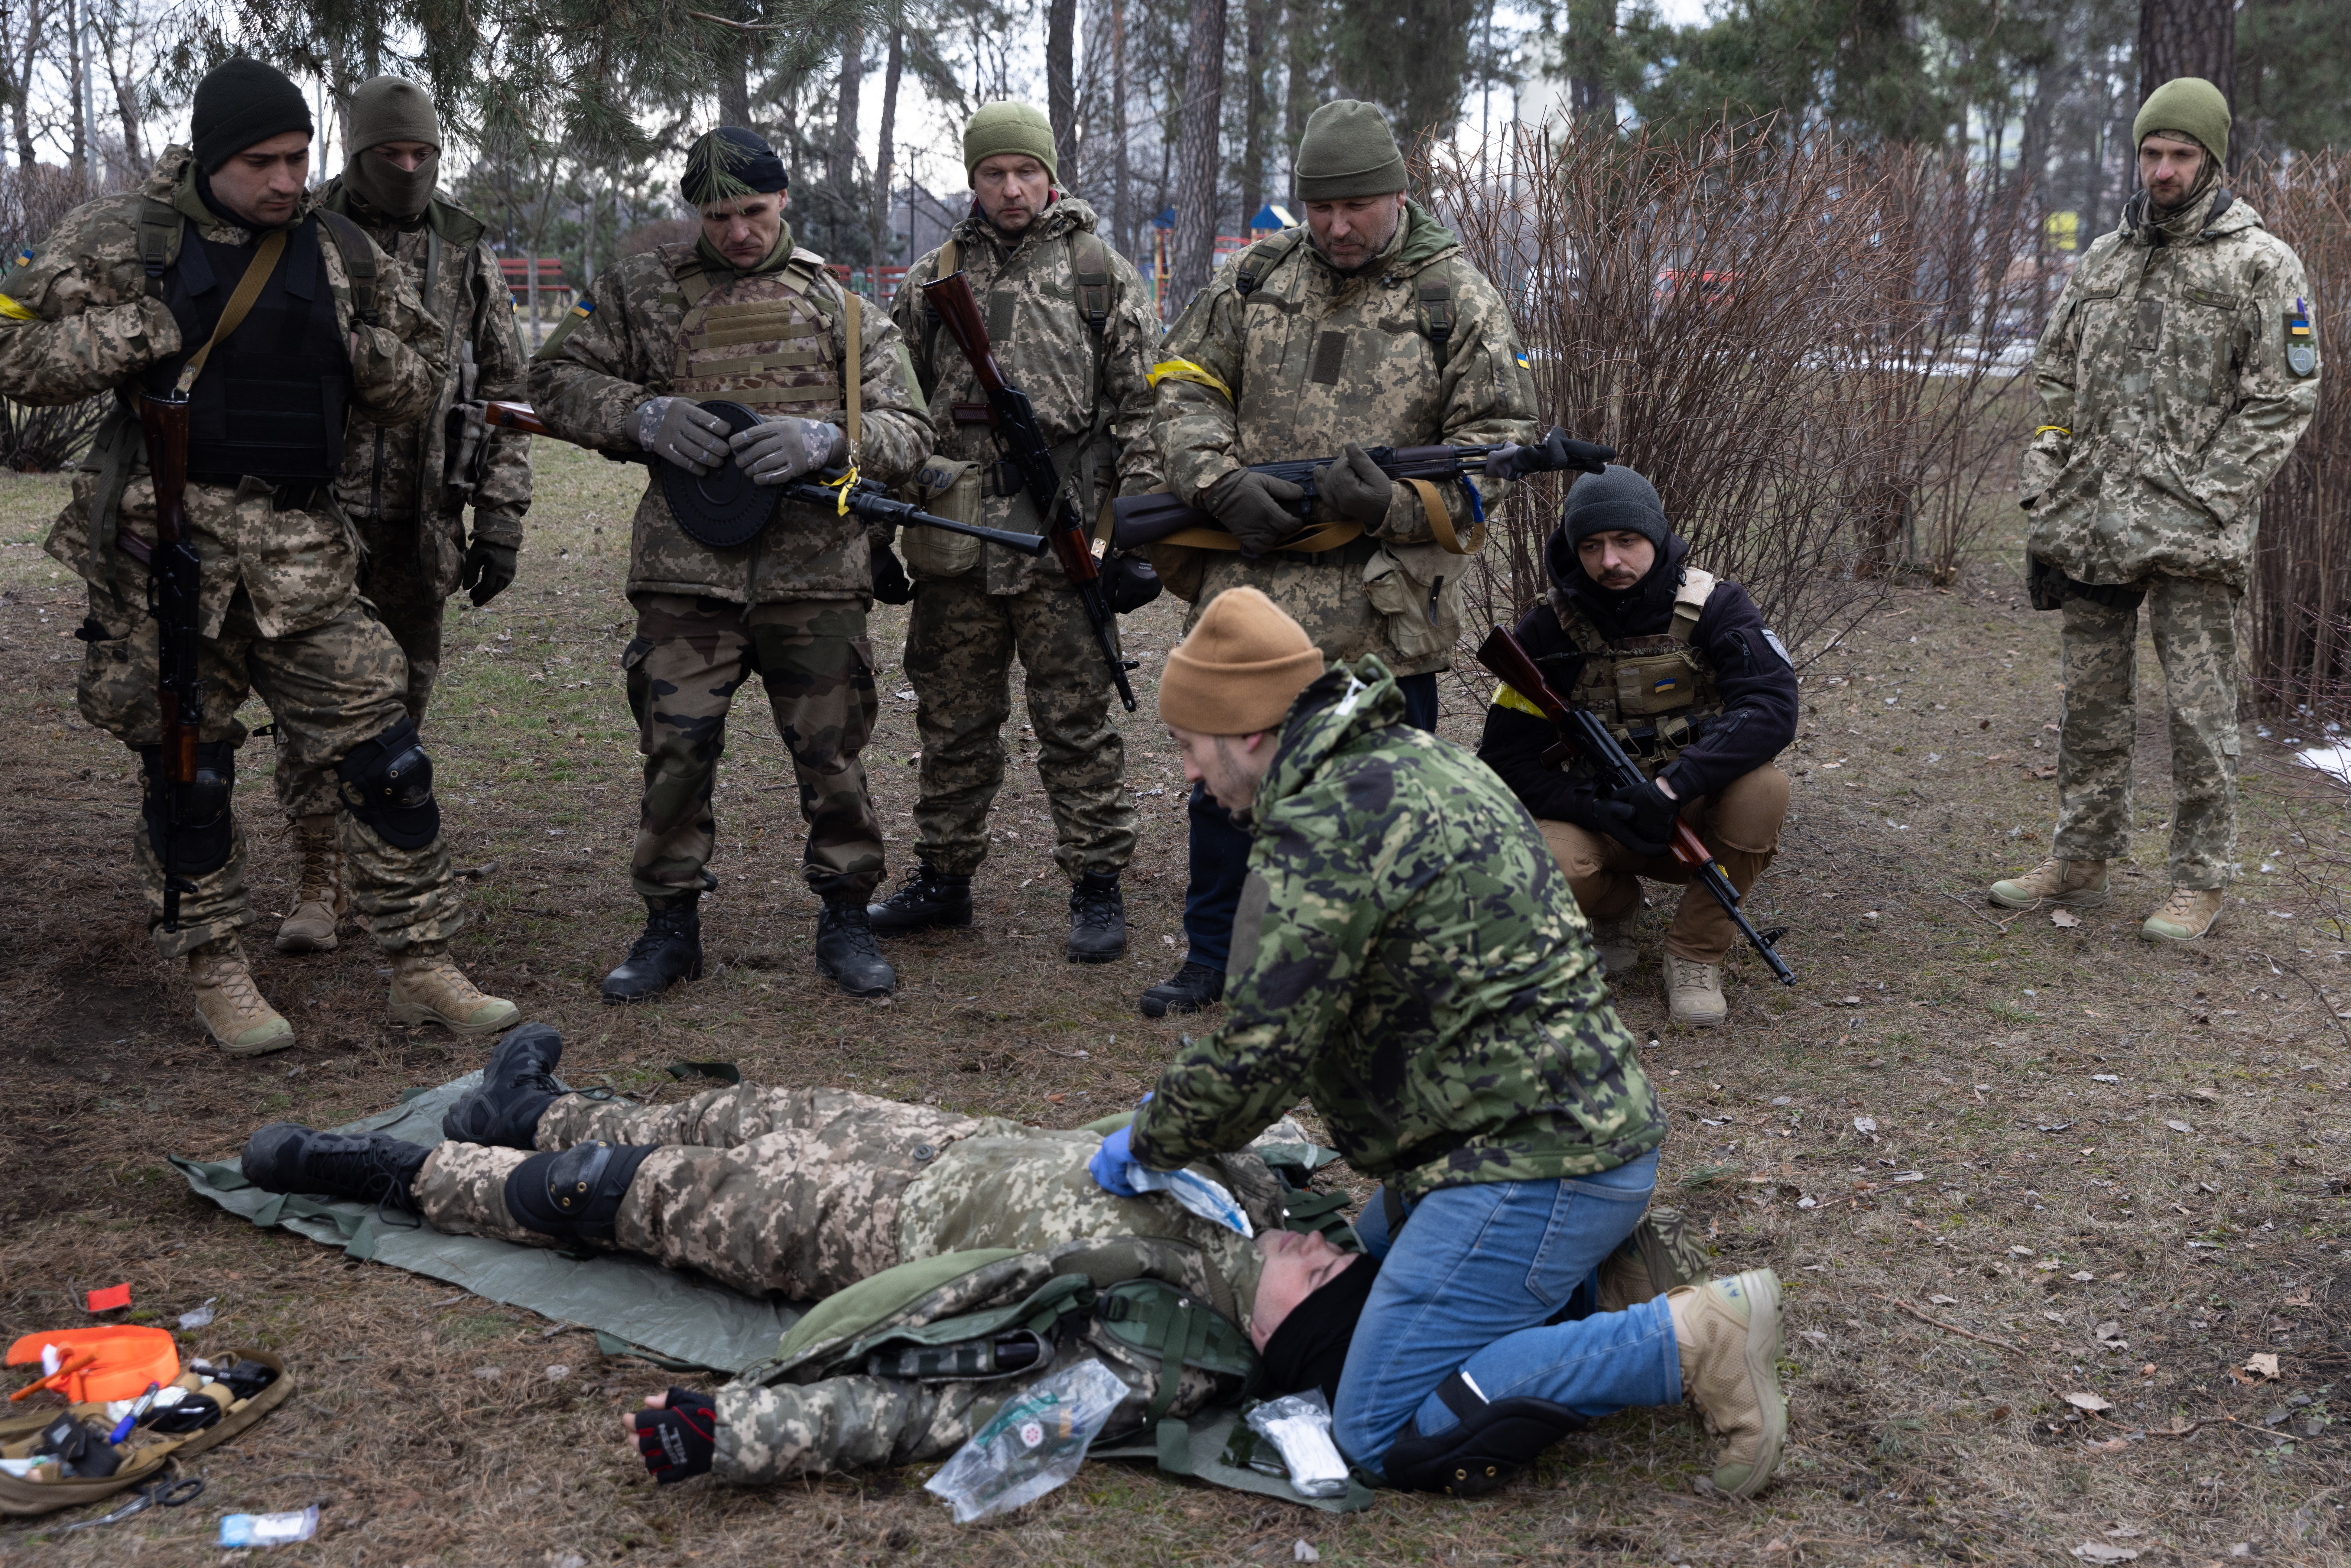 Foto de archivo: Meimbros de las fuerzas de defensa territorial aprenden primeros auxilios durante una sesión de entrenamiento en un parque de Kyiv el 9 de marzo de 2022